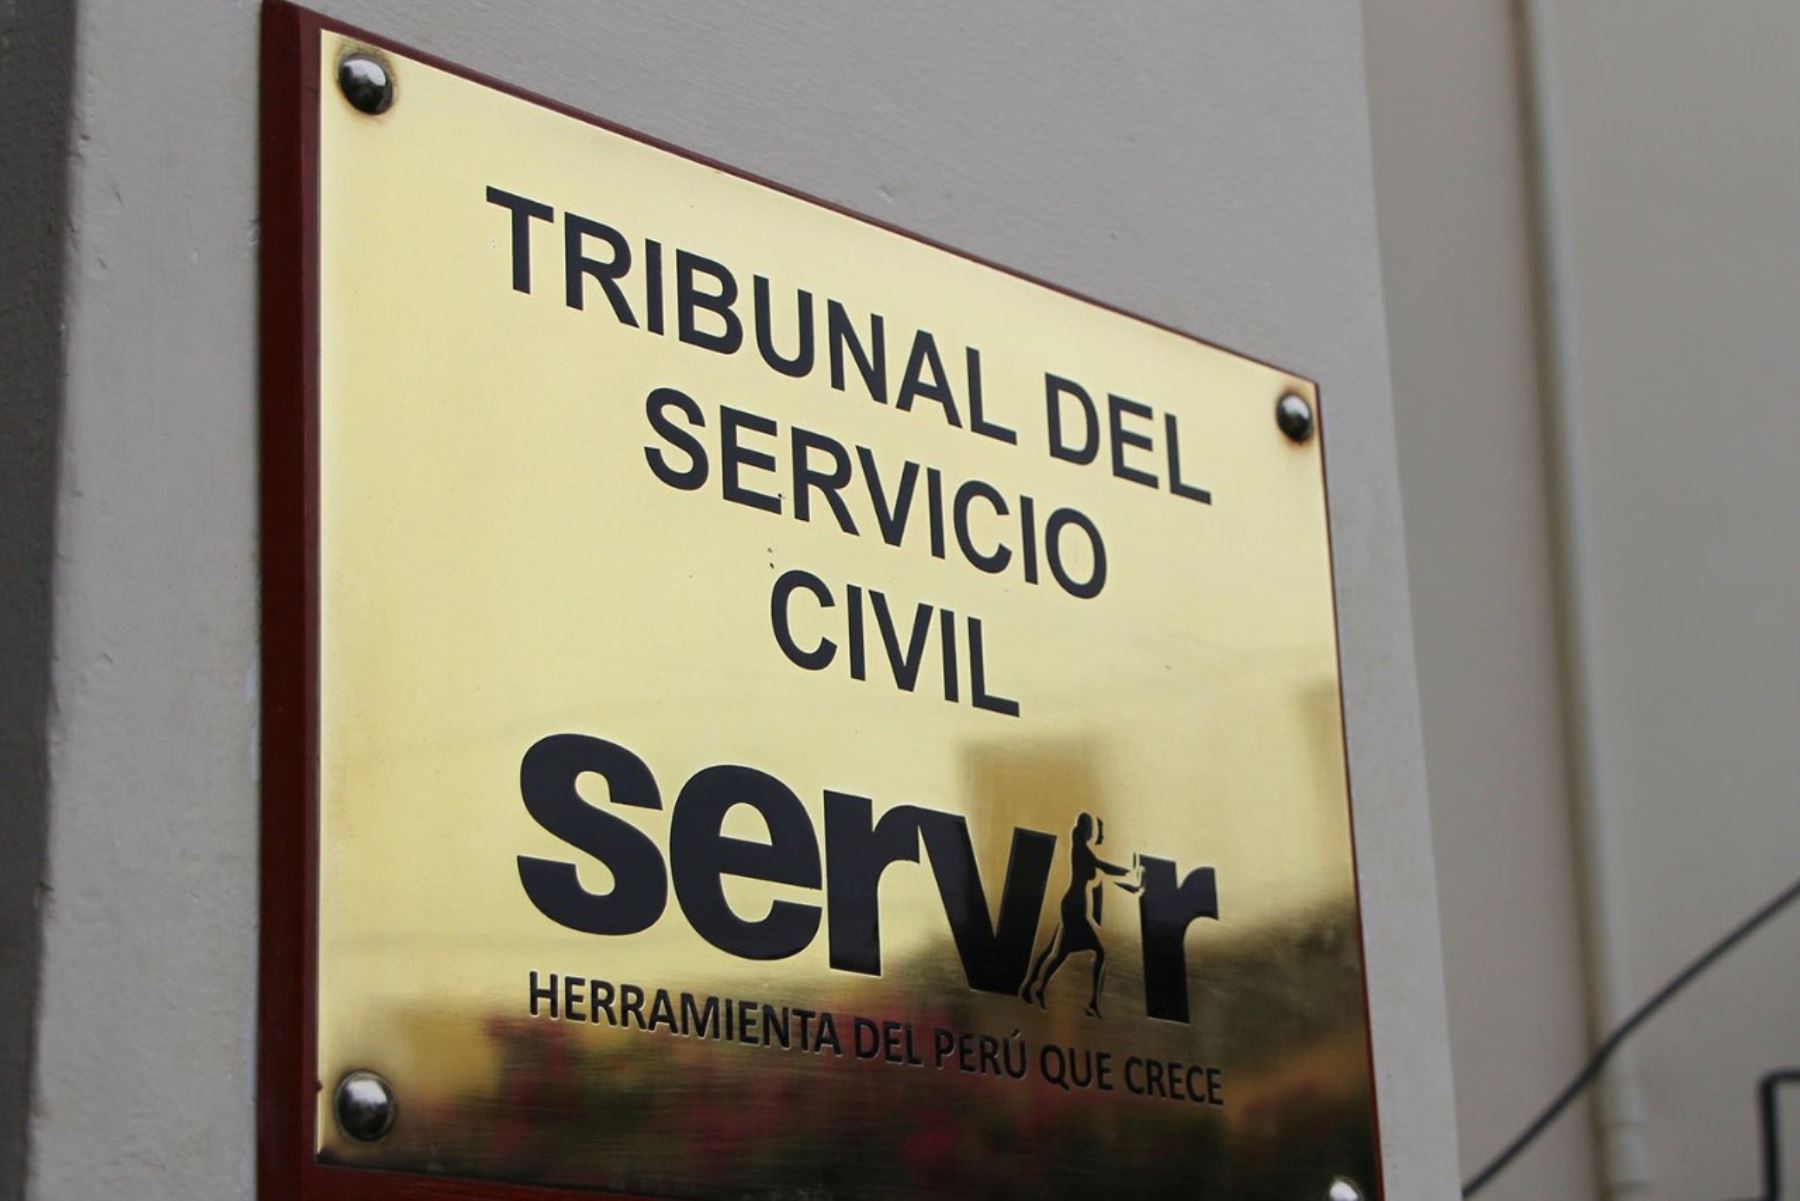 El Tribunal del Servicio Civil cumplió diez años de servicio ininterrumpido al país. Foto: ANDINA/Difusión